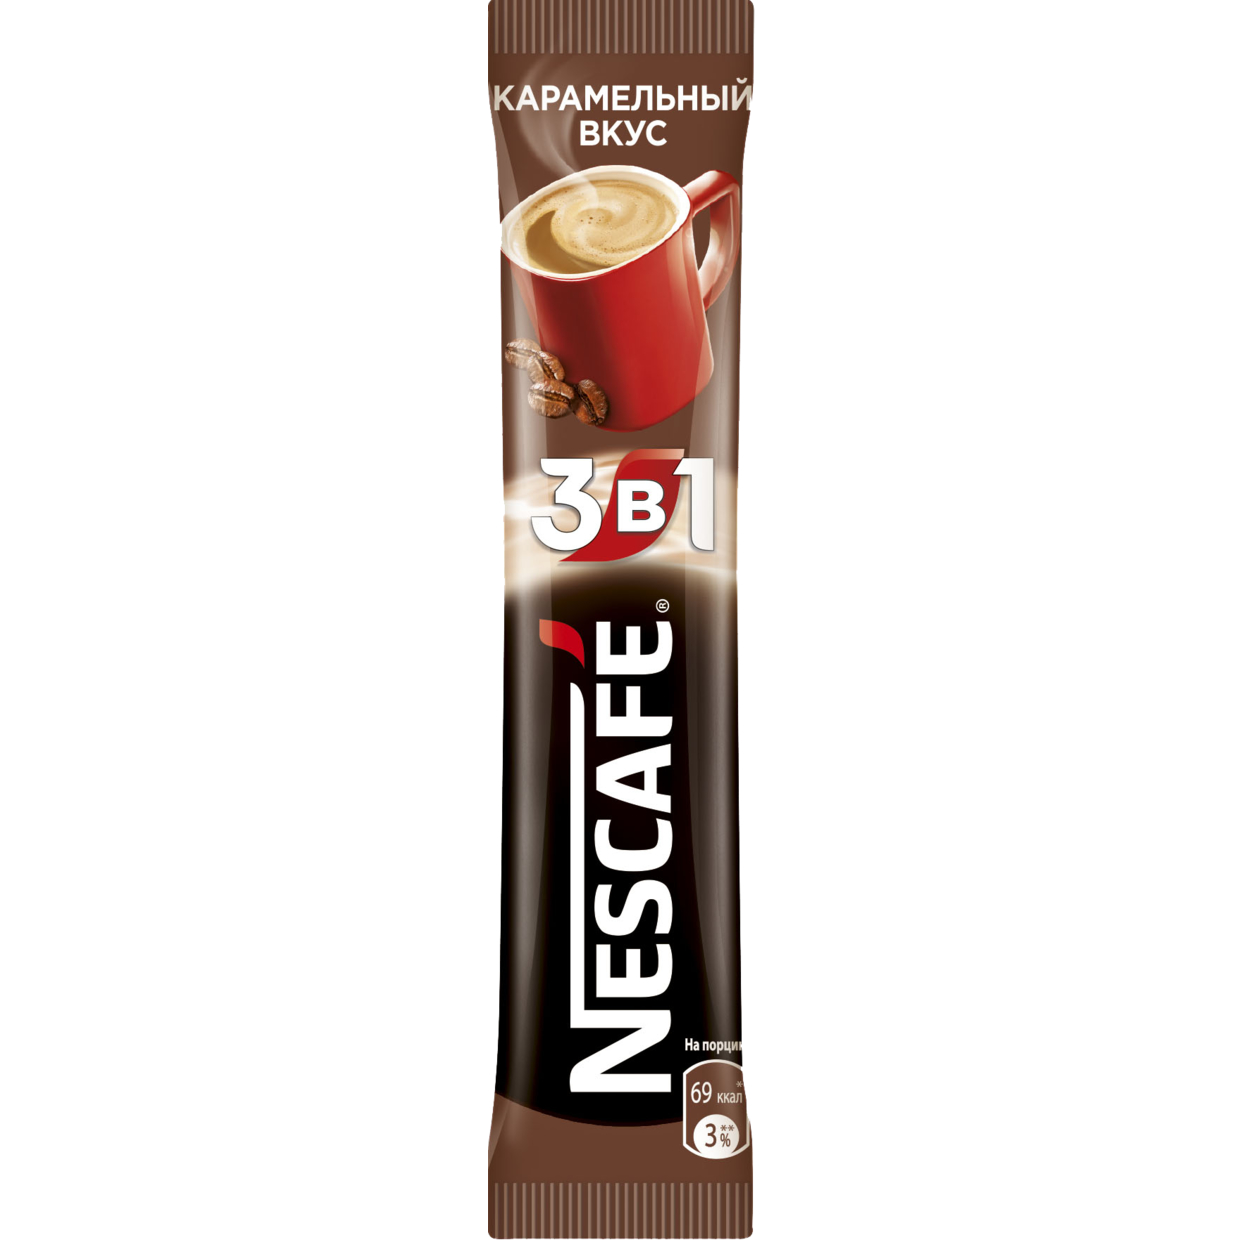 Напиток кофейный растворимый NESCAFE 3 в 1 Карамельный вкус, 16 г по акции в Пятерочке